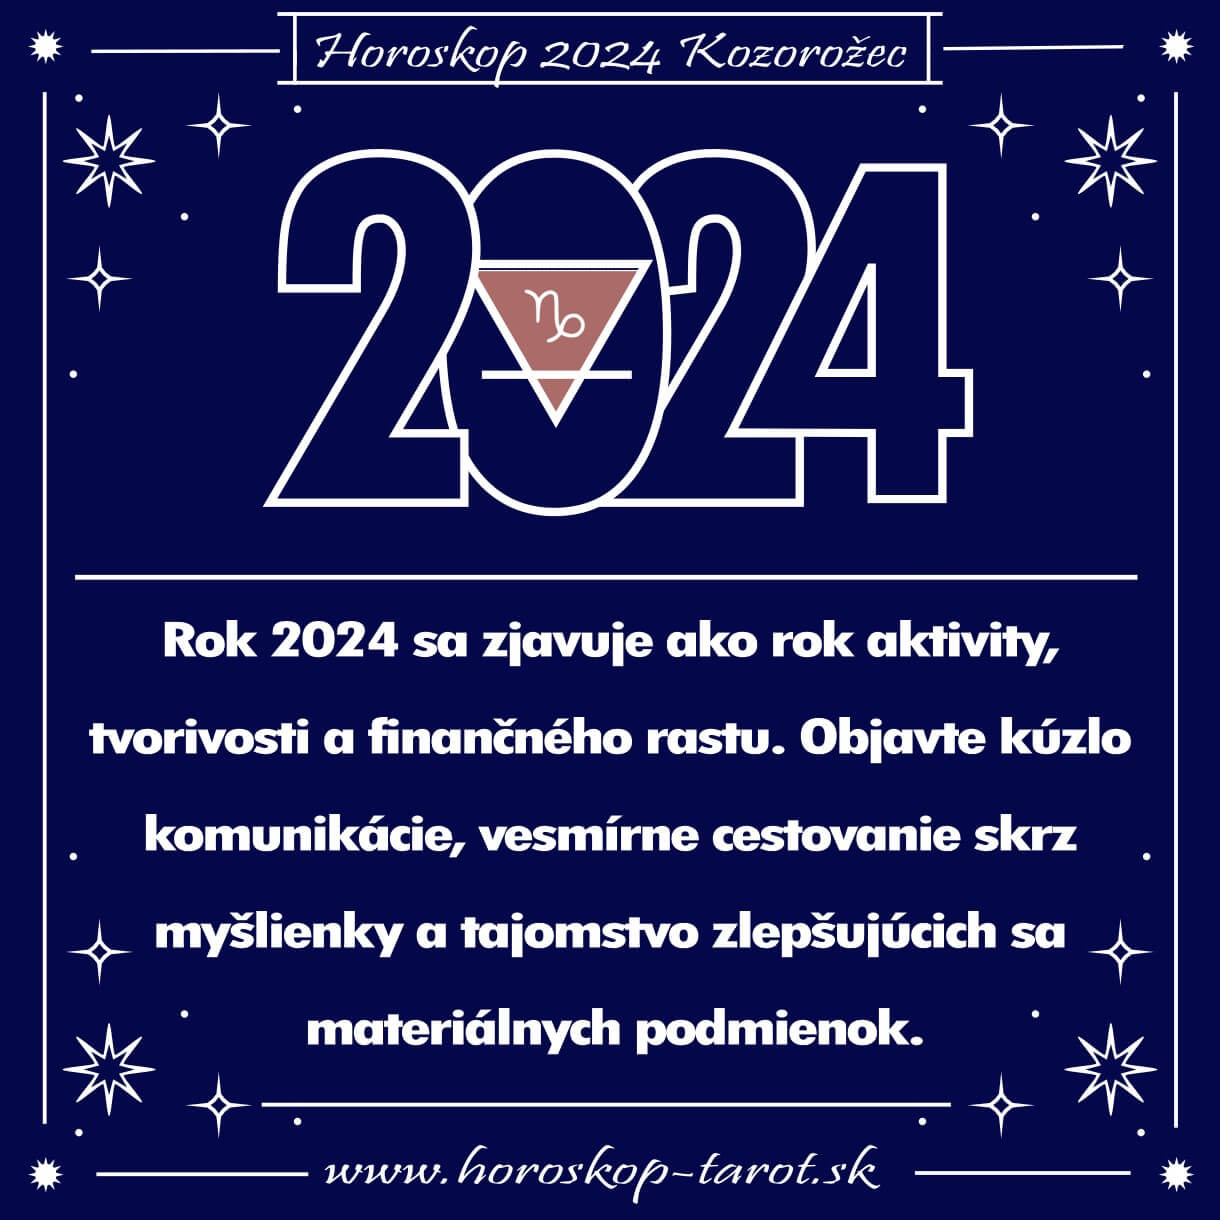 Ročný Horoskop na rok 2024 Kozorožec | horoskop-tarot.sk